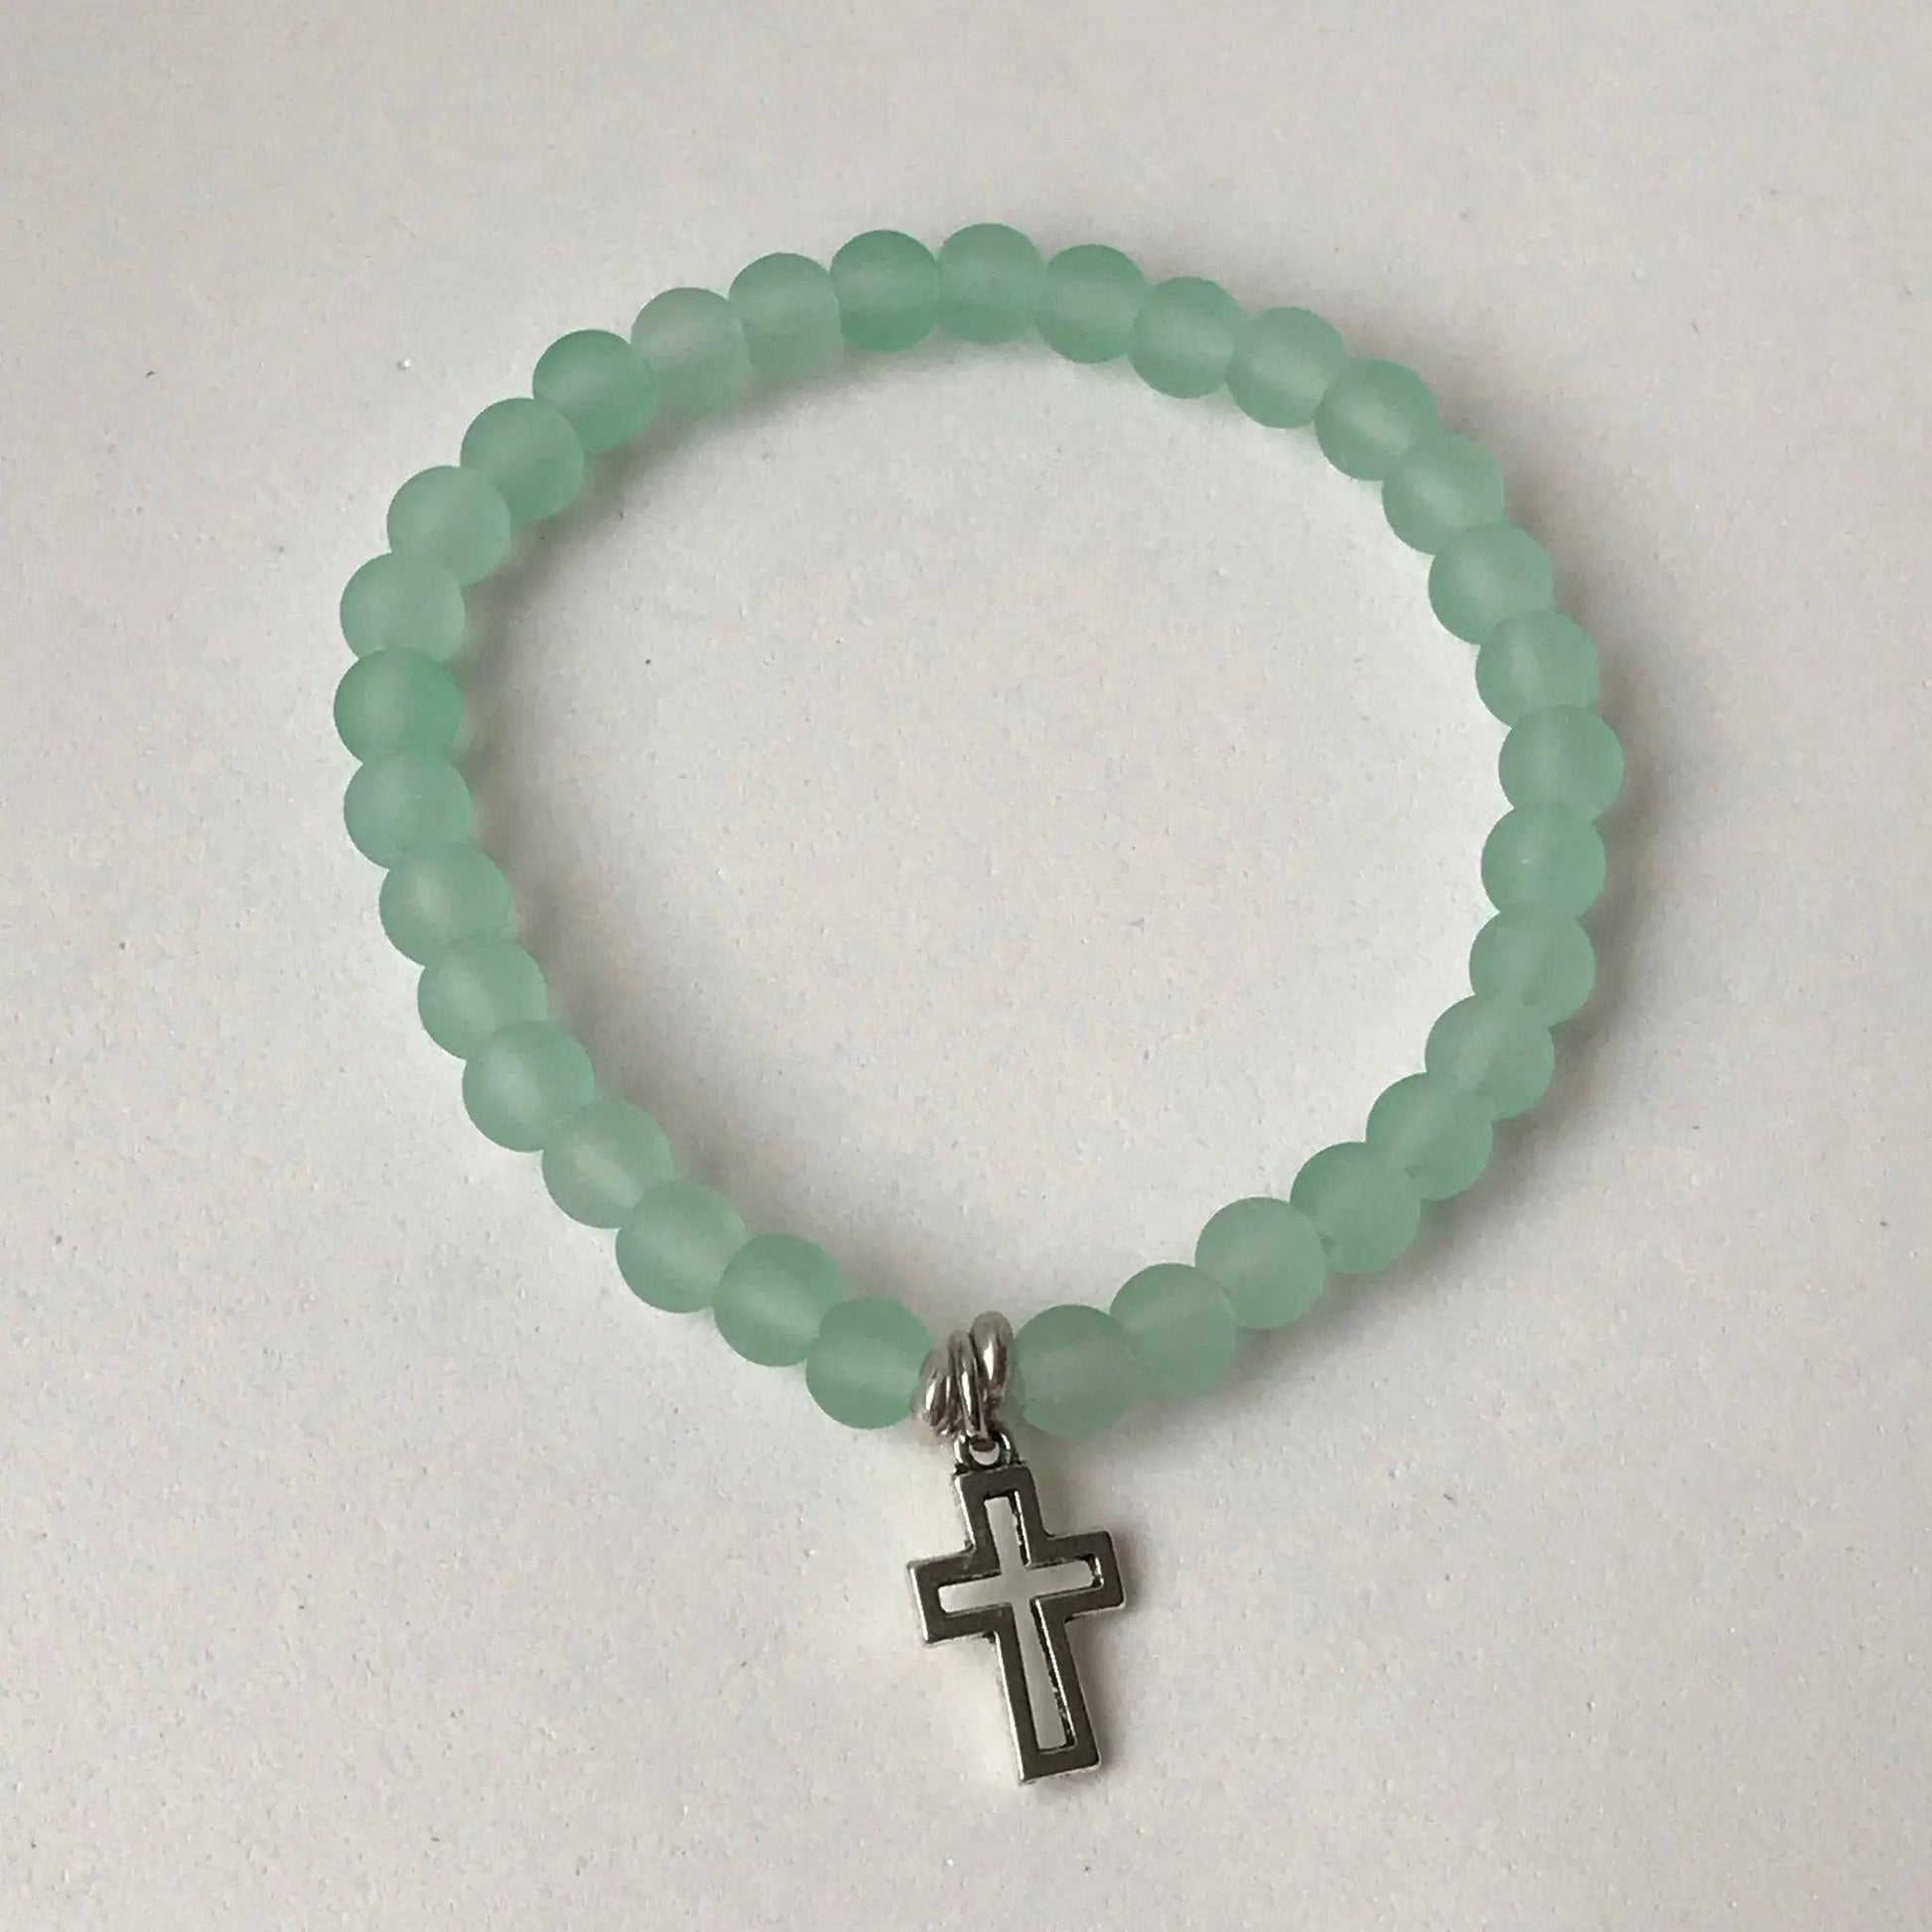 Cross (Faith) Charm Bracelet - Uplift Beads